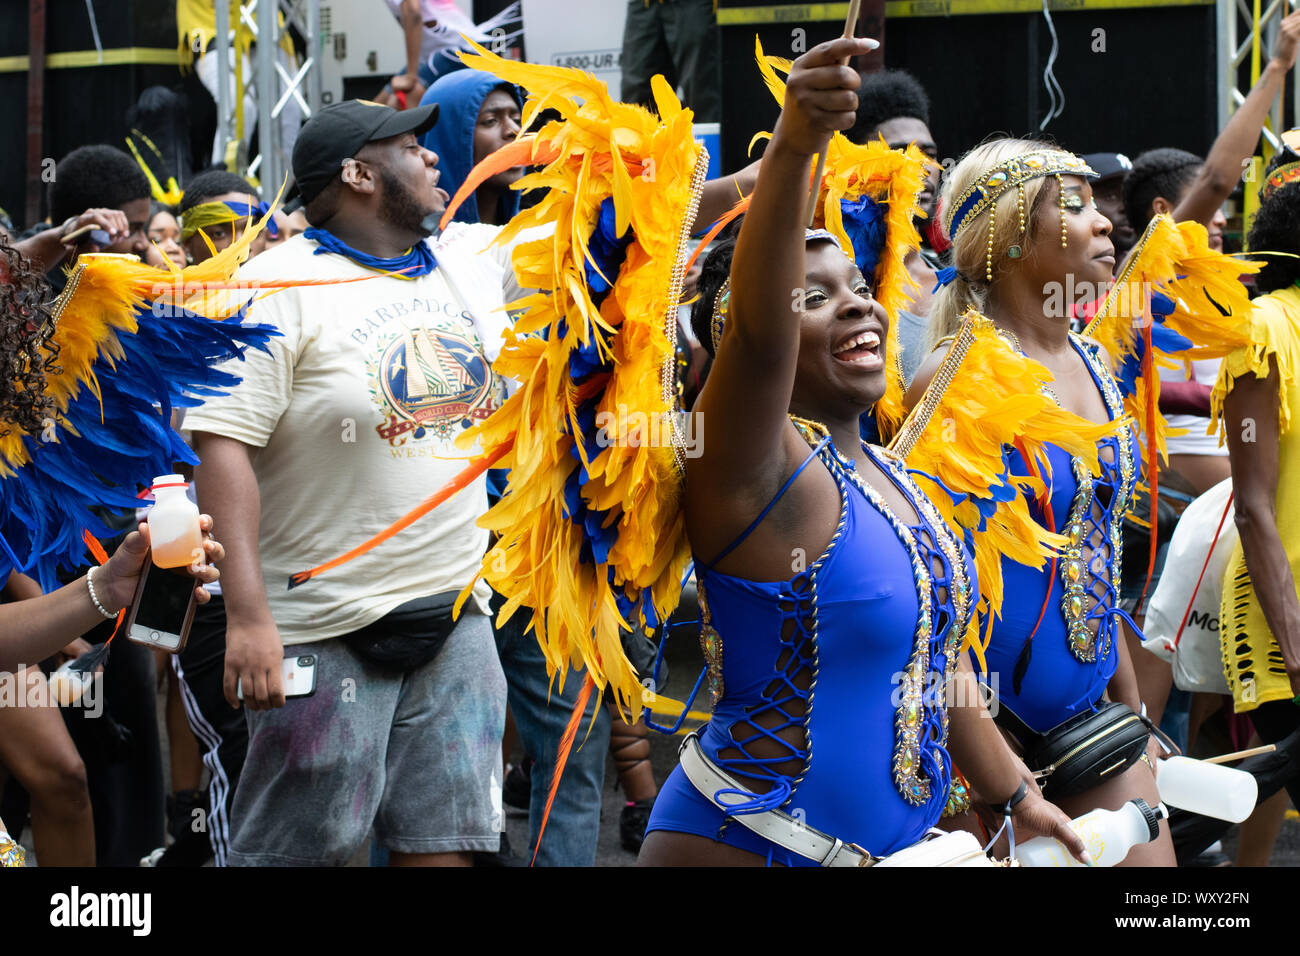 Tanzend zu lauter Musik laufen Teilnehmer der West Indian Day Parade in New York City an den Zuschauern vorbei und animieren diese. Stock Photo